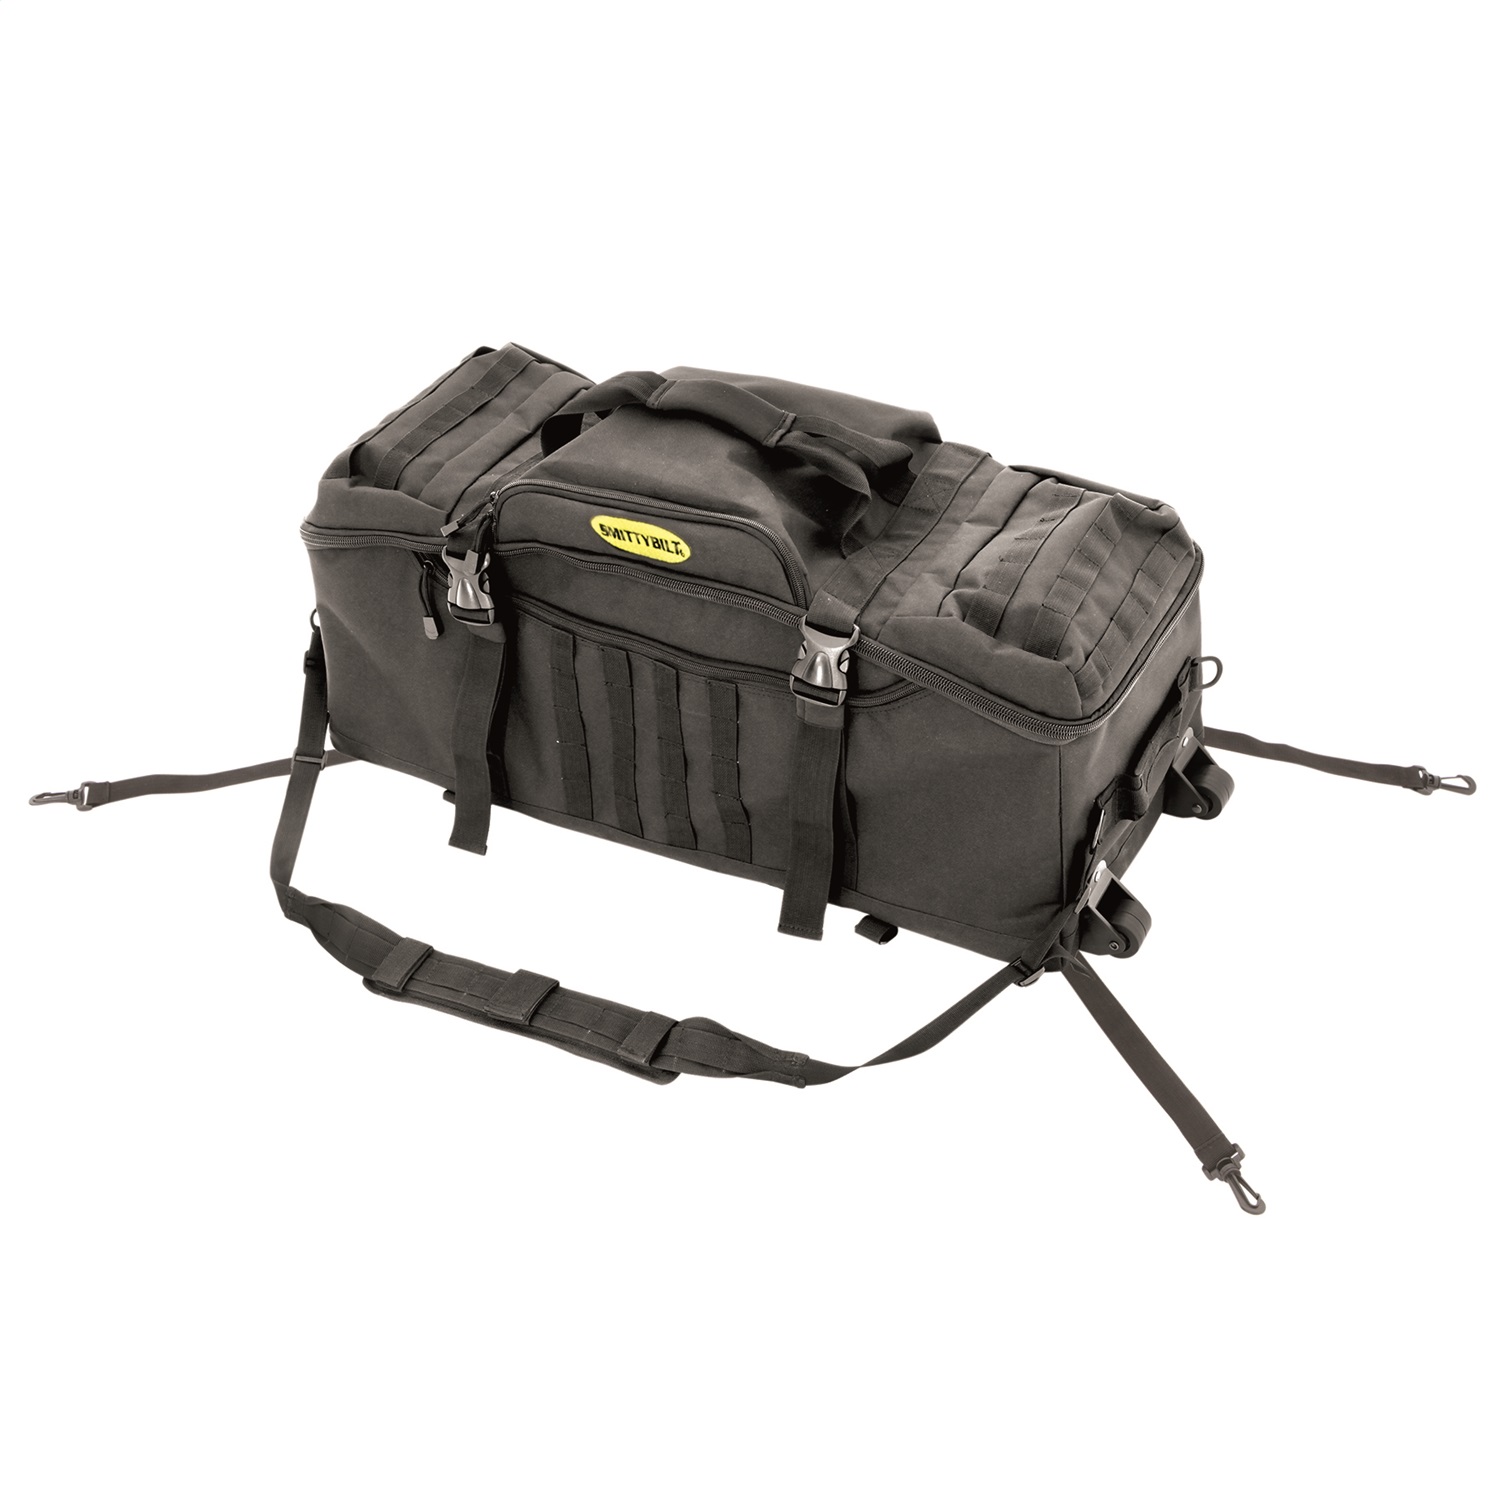 Smittybilt 2826 Trail Gear Bag